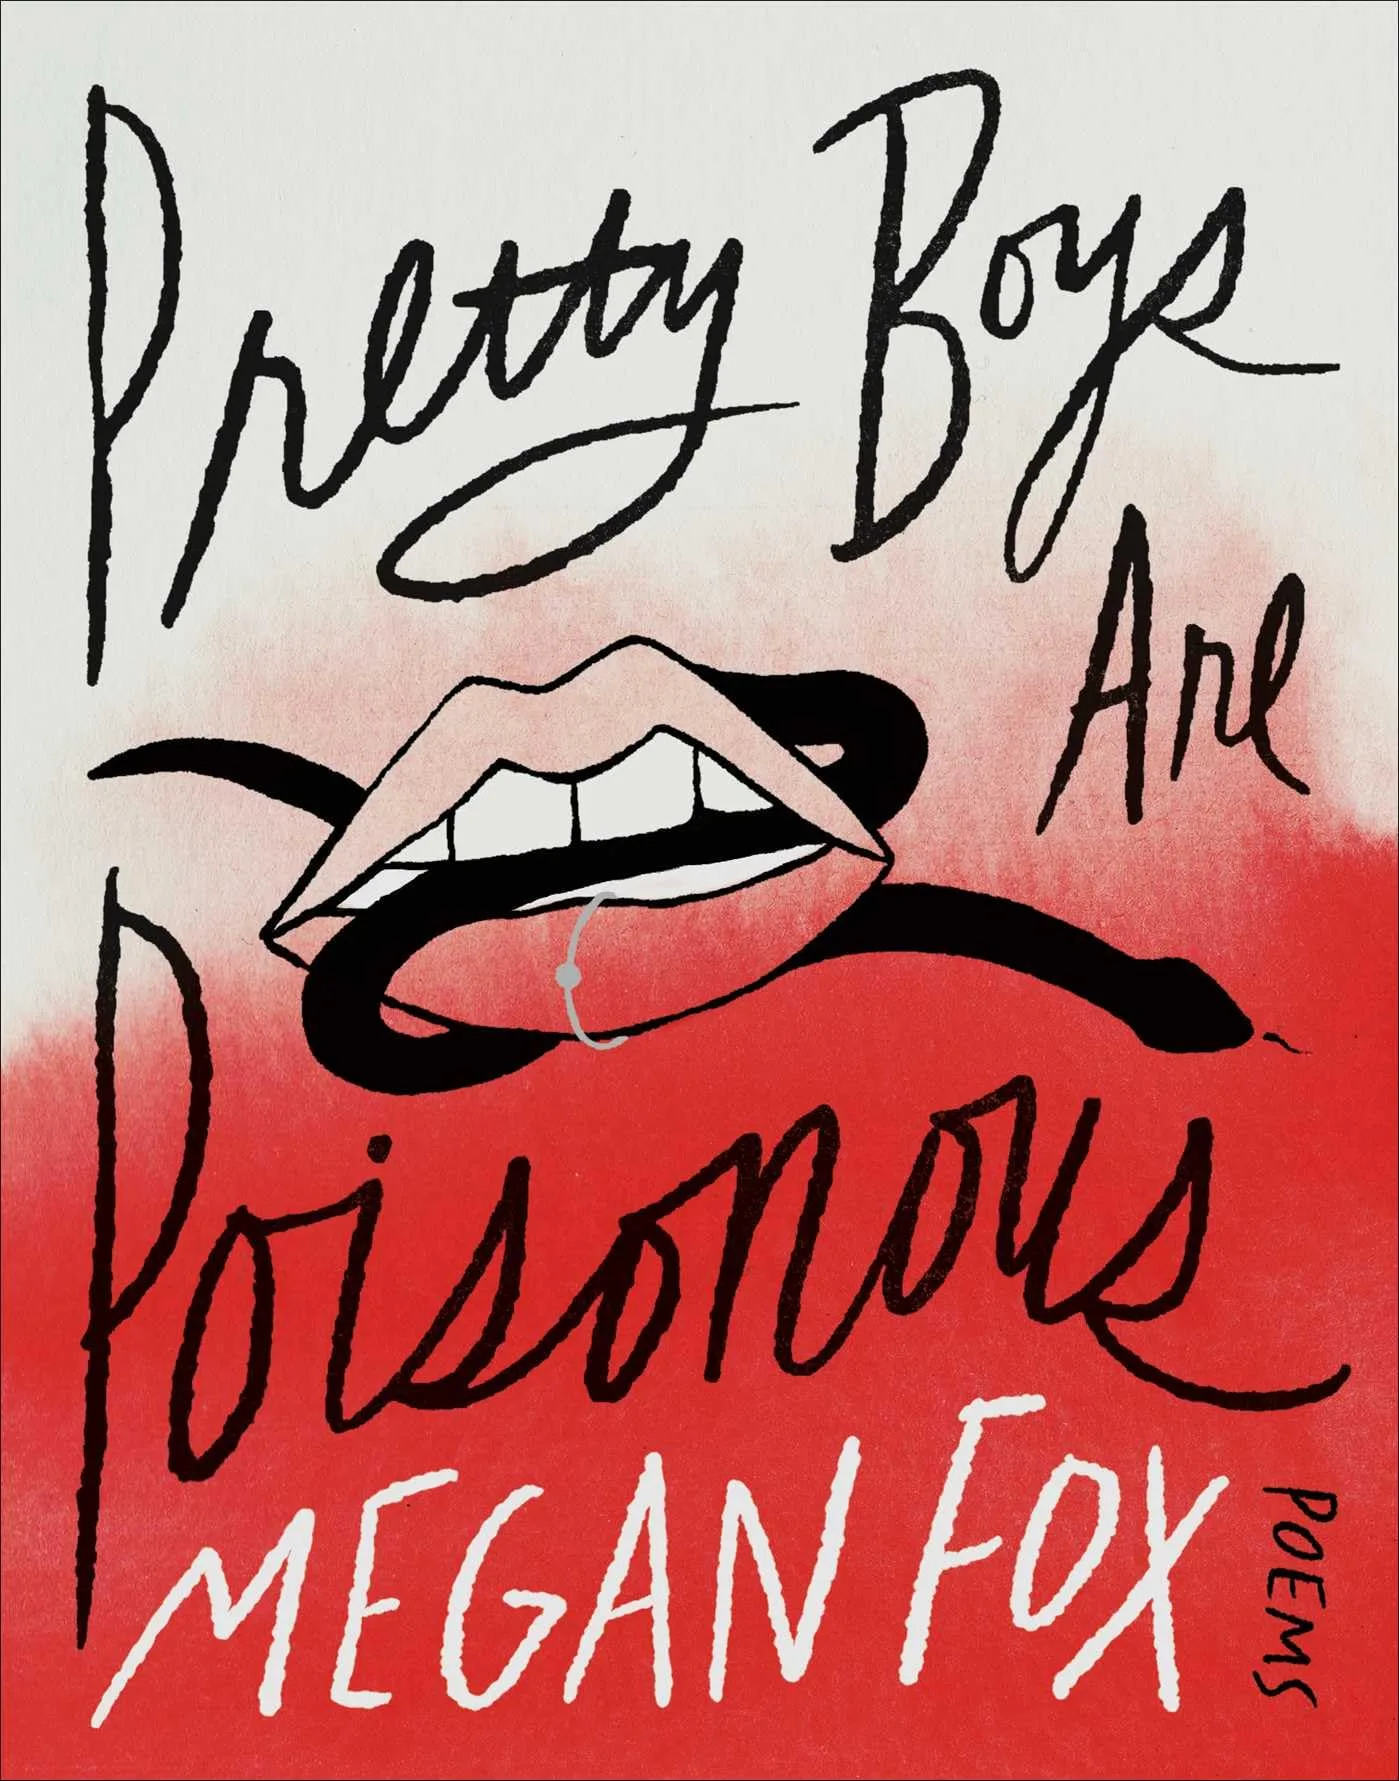 Poeta! Megan Fox lançará livro de poemas